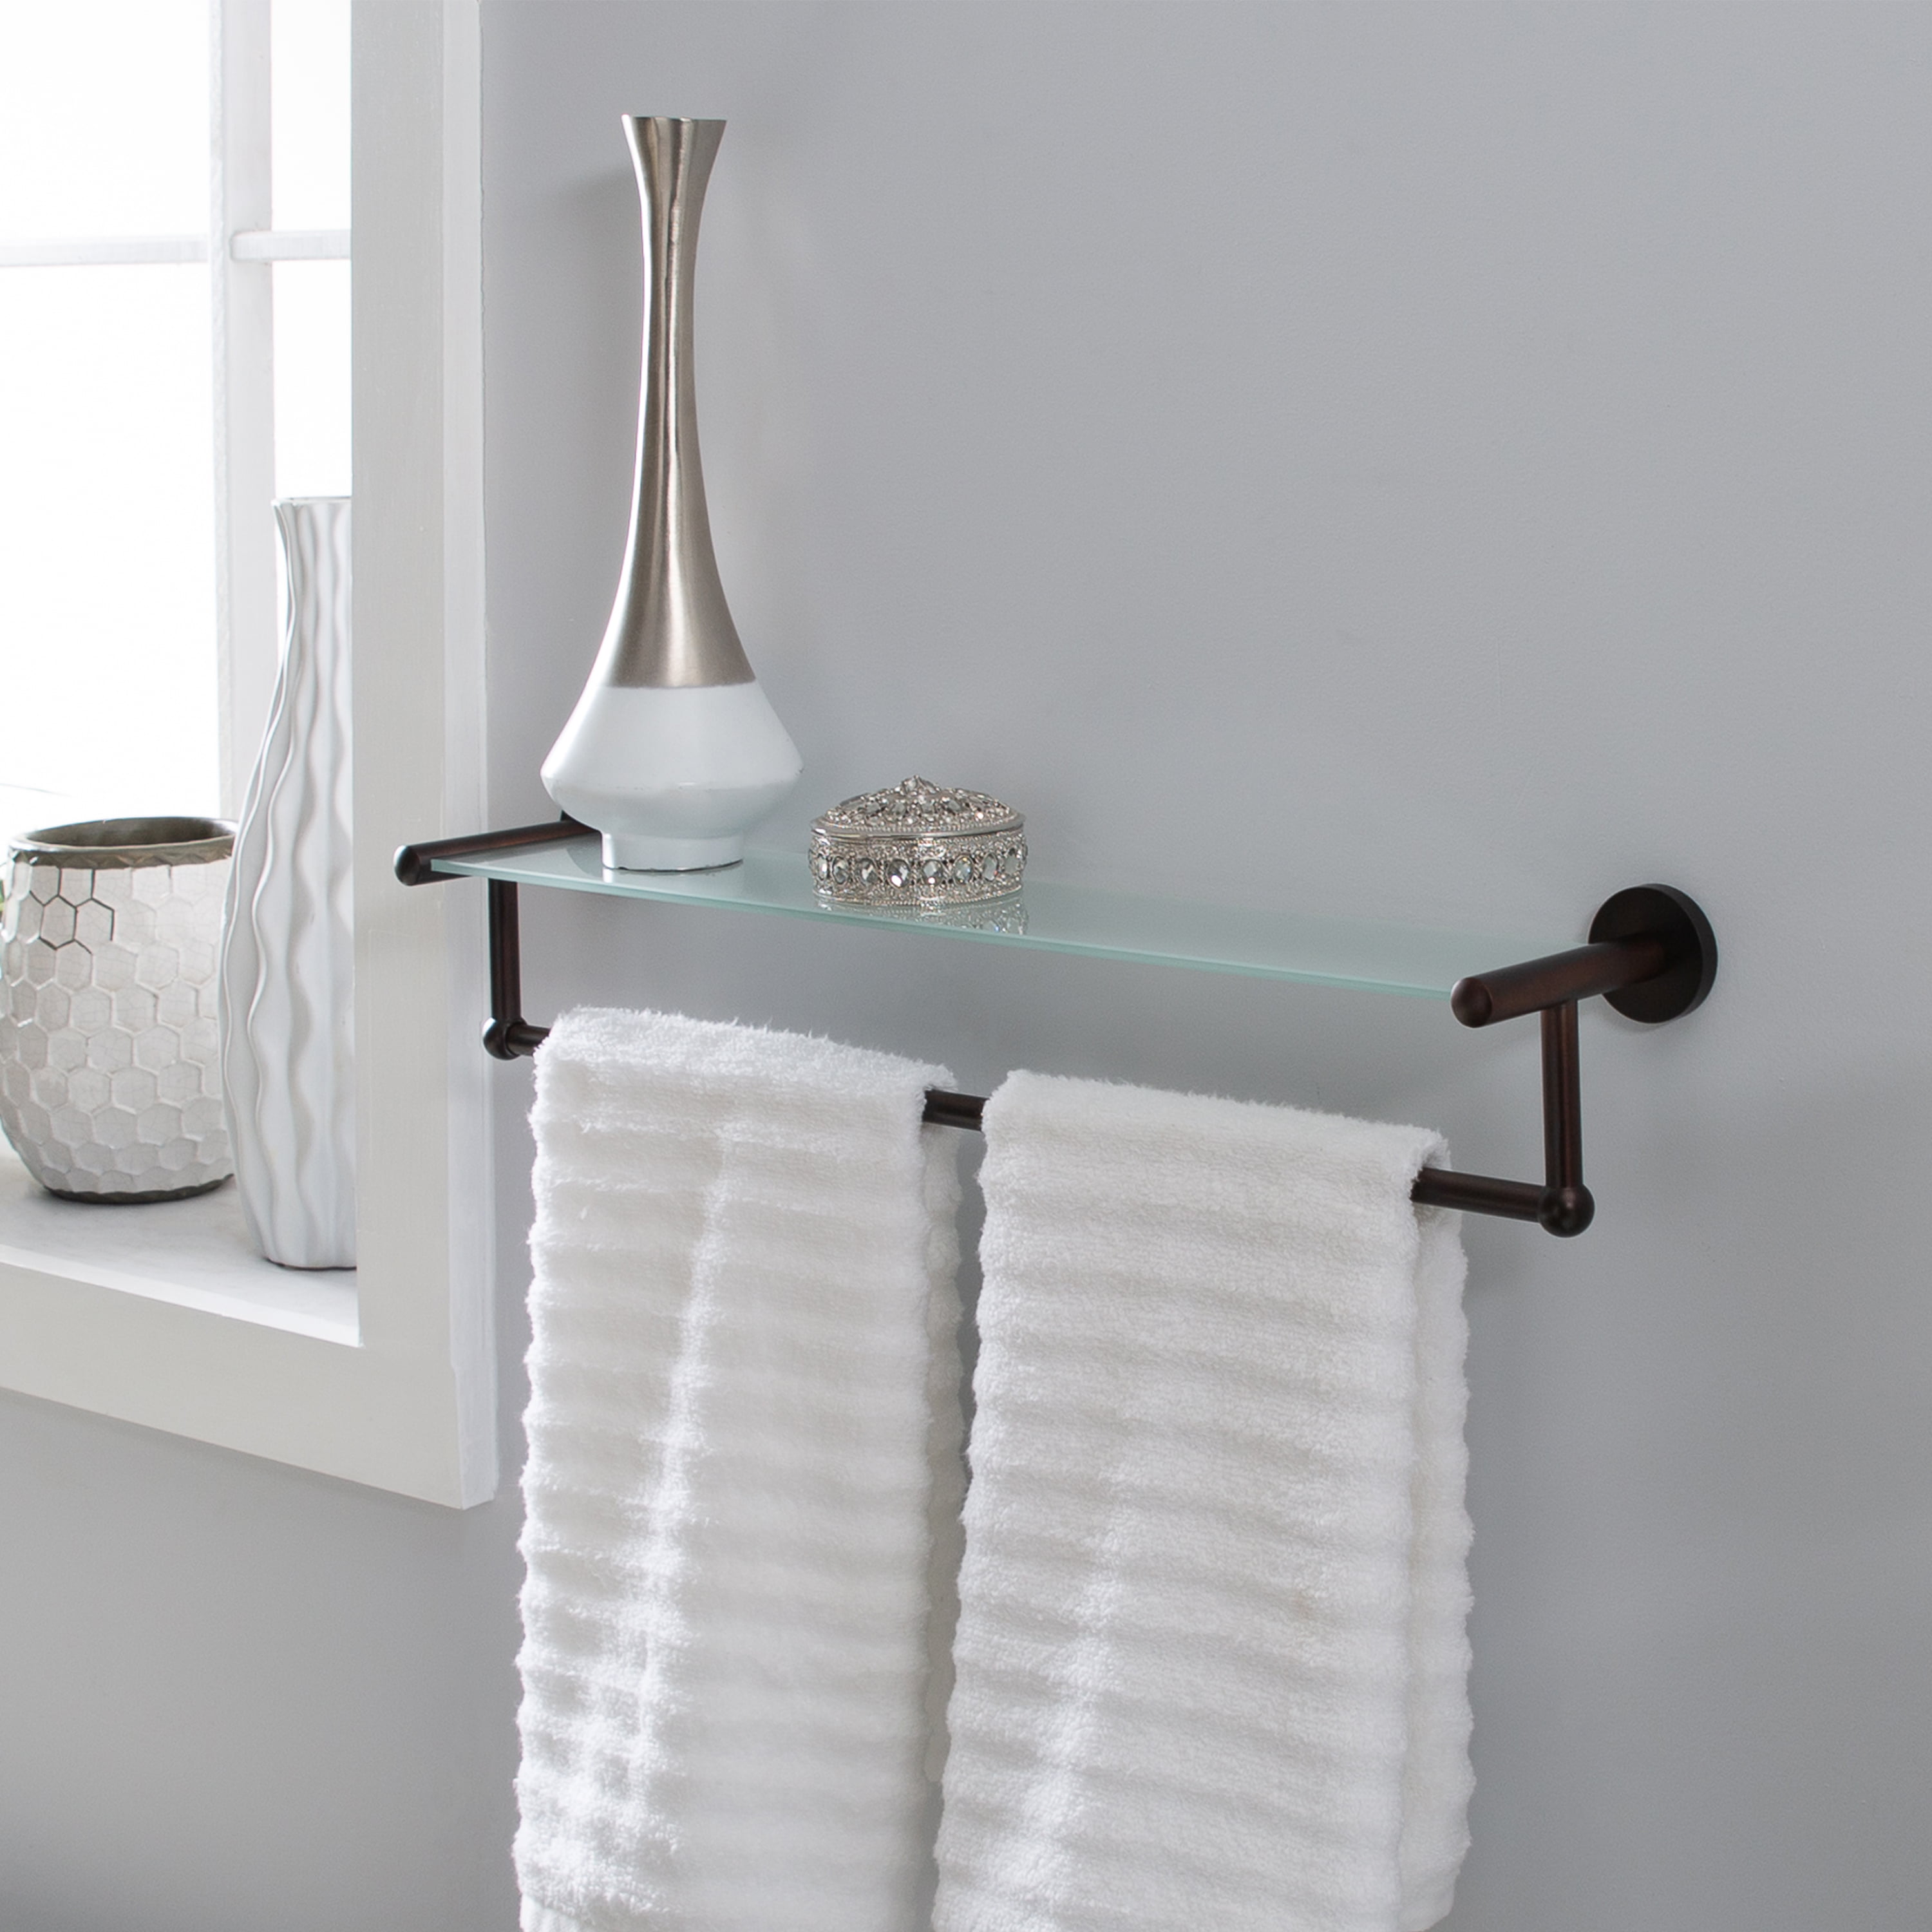 Organize It All Satin Nickel Glass Shelf with Towel Bar 